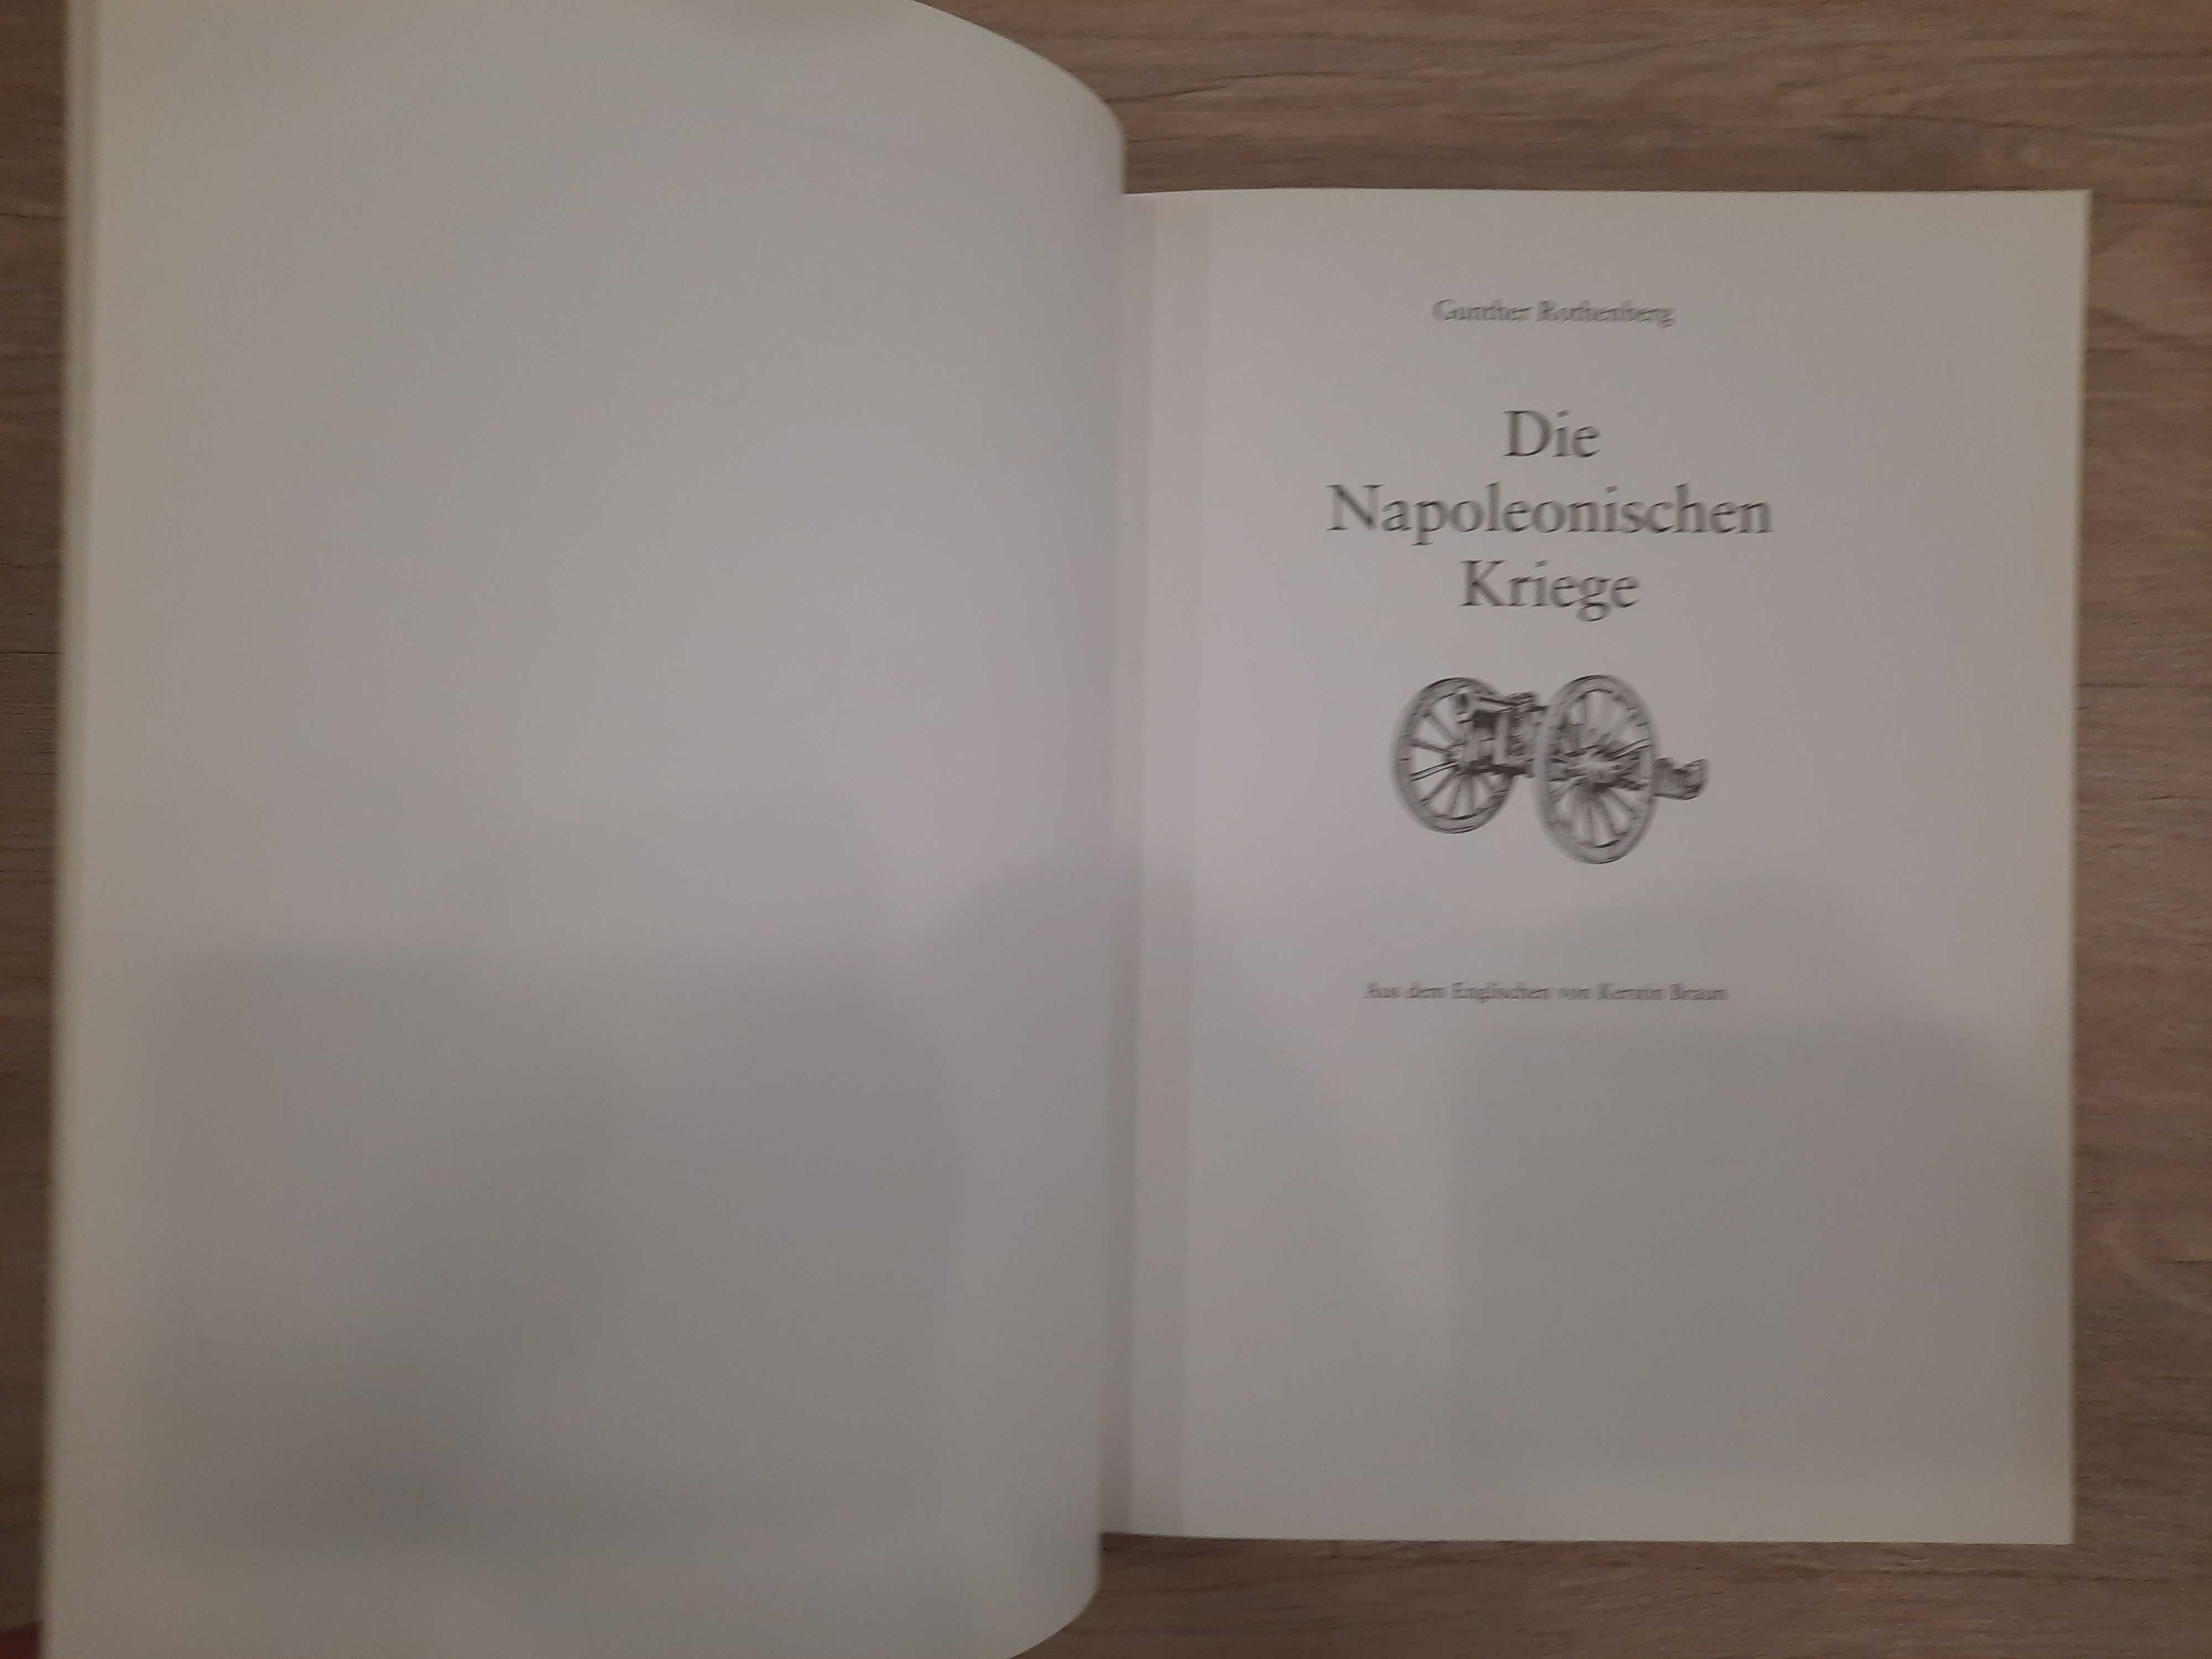 Gunther Rothenberg. Die Napoleonischen Kriege. Наполеоновские войны.